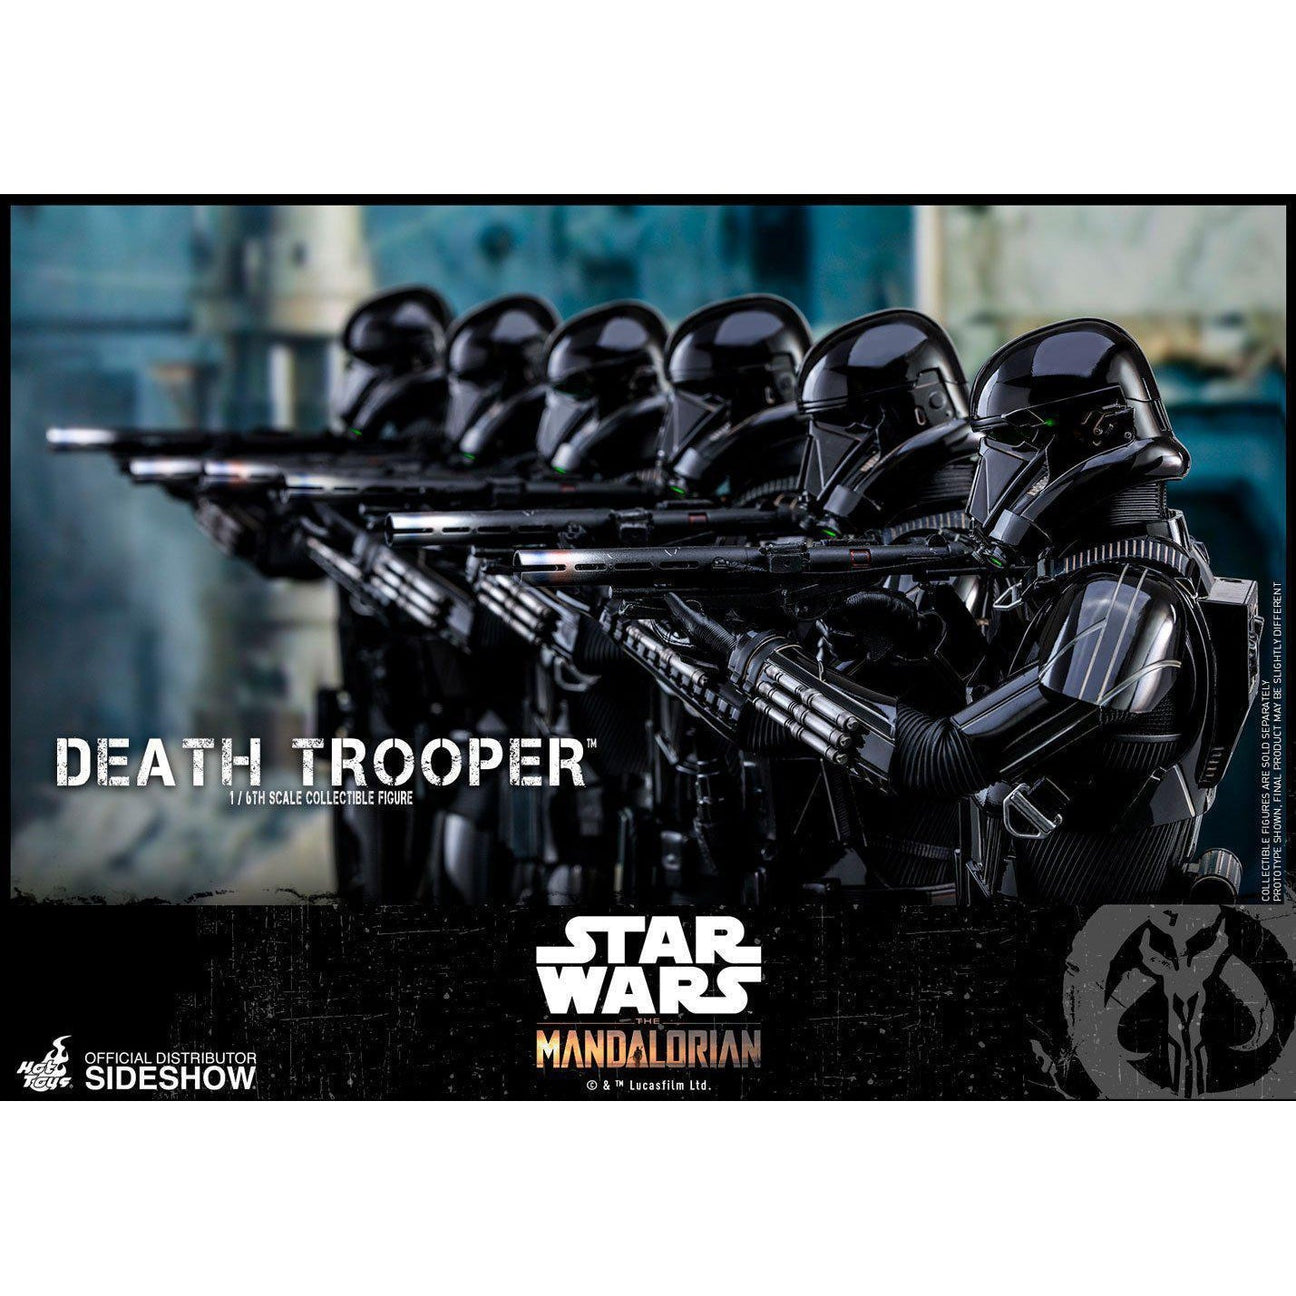 Star Wars: The Mandalorian - Death Trooper 1/6 VORBESTELLUNG!-Actionfiguren-Hot Toys-mighty-underground